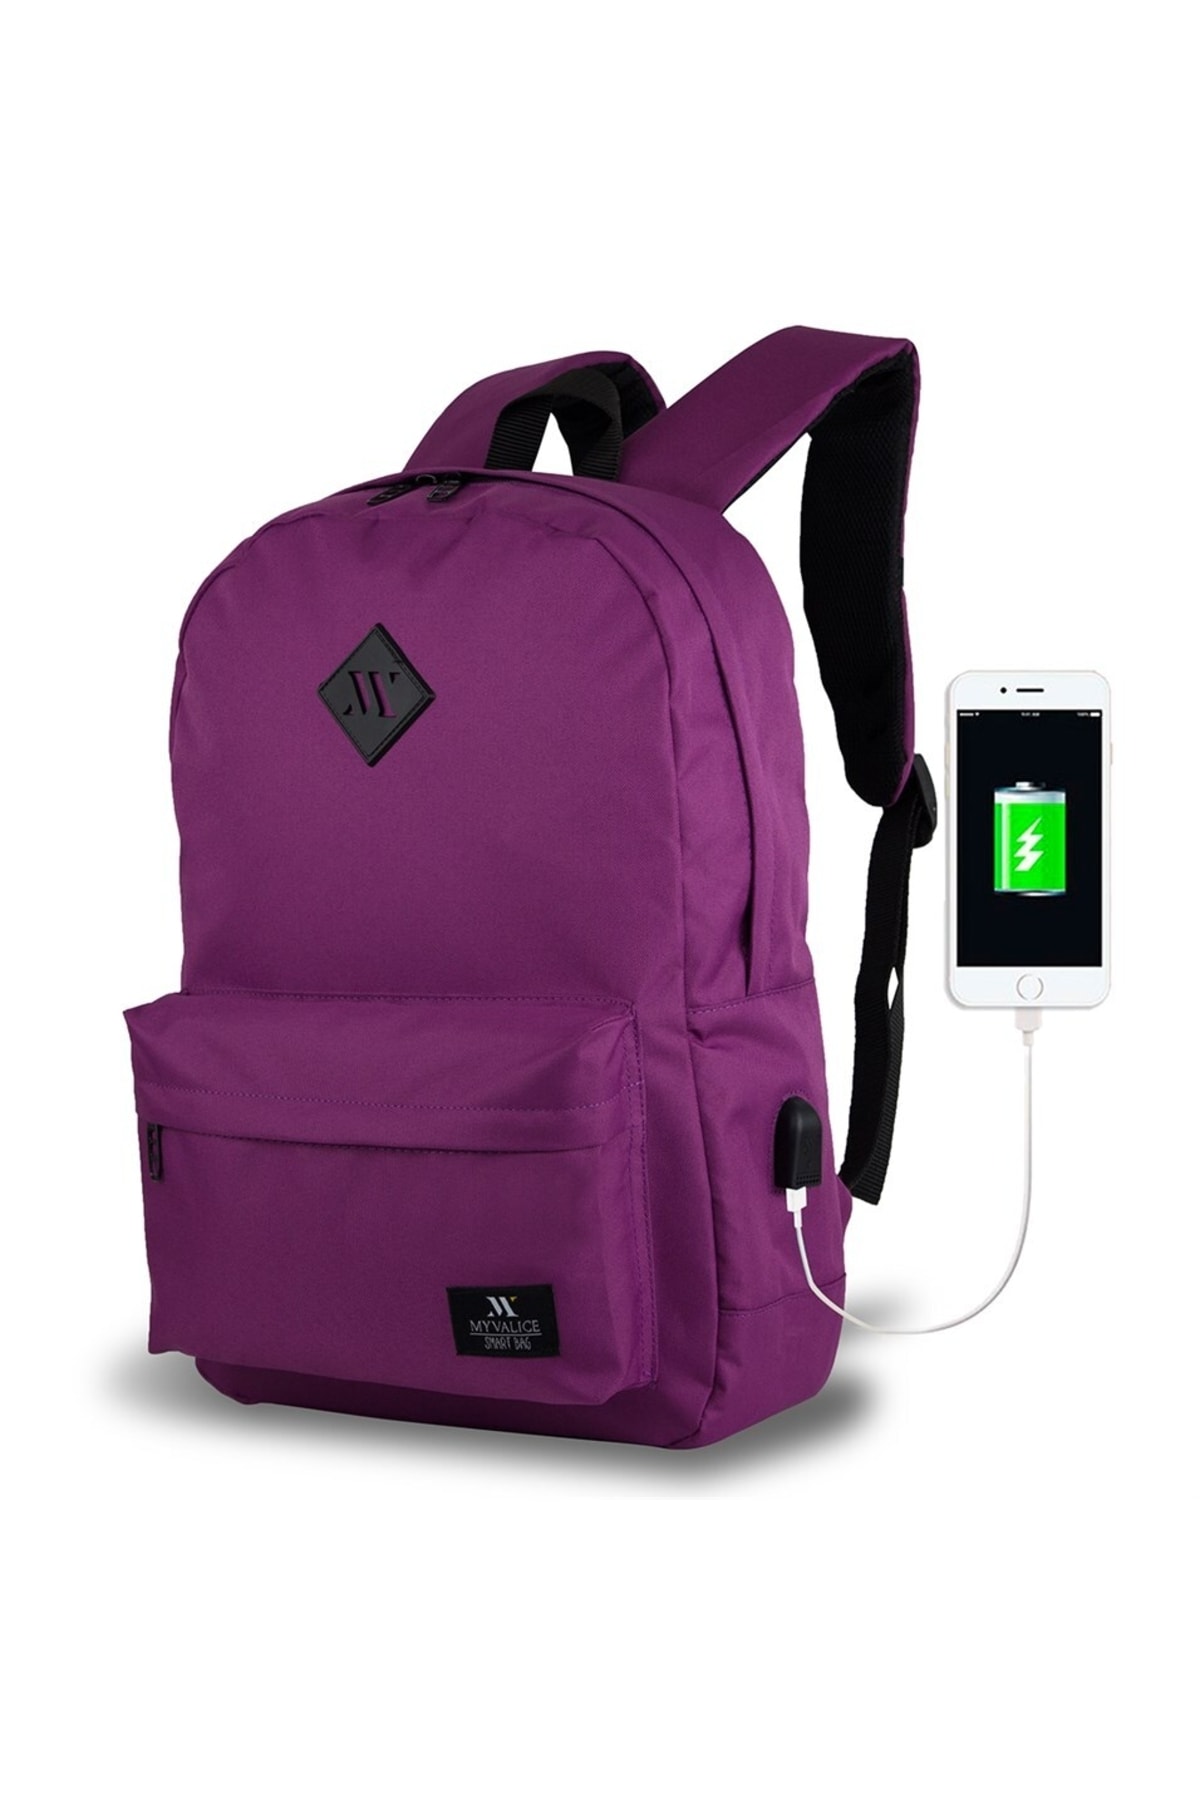 My Valice Smart Bag Specta Usb Şarj Girişli Akıllı Laptop Sırt Çantası Mürdüm